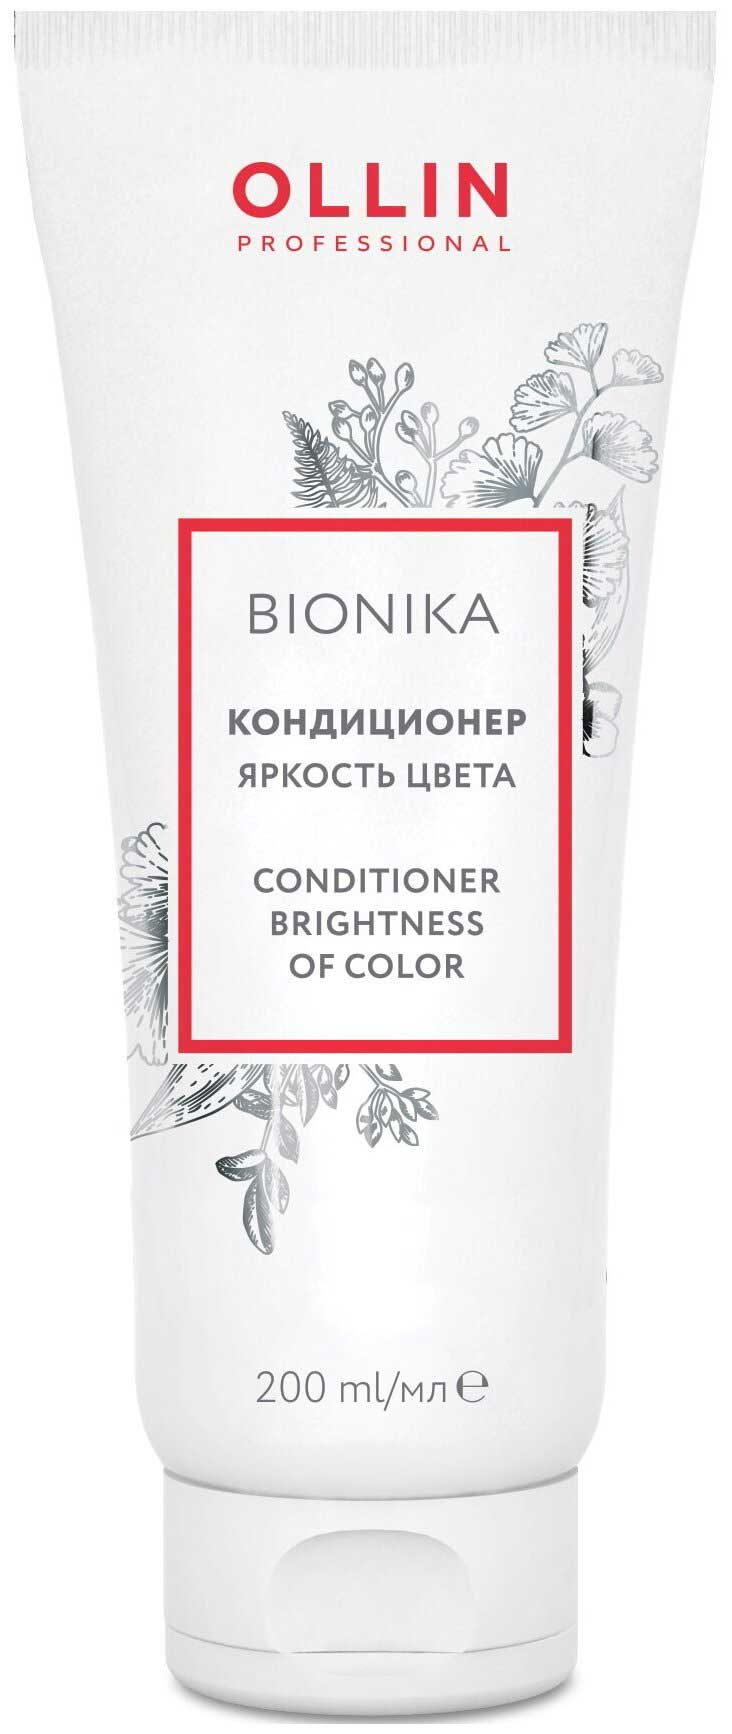 Кондиционер Ollin Professional BioNika для окрашенных волос Яркость цвета 200мл